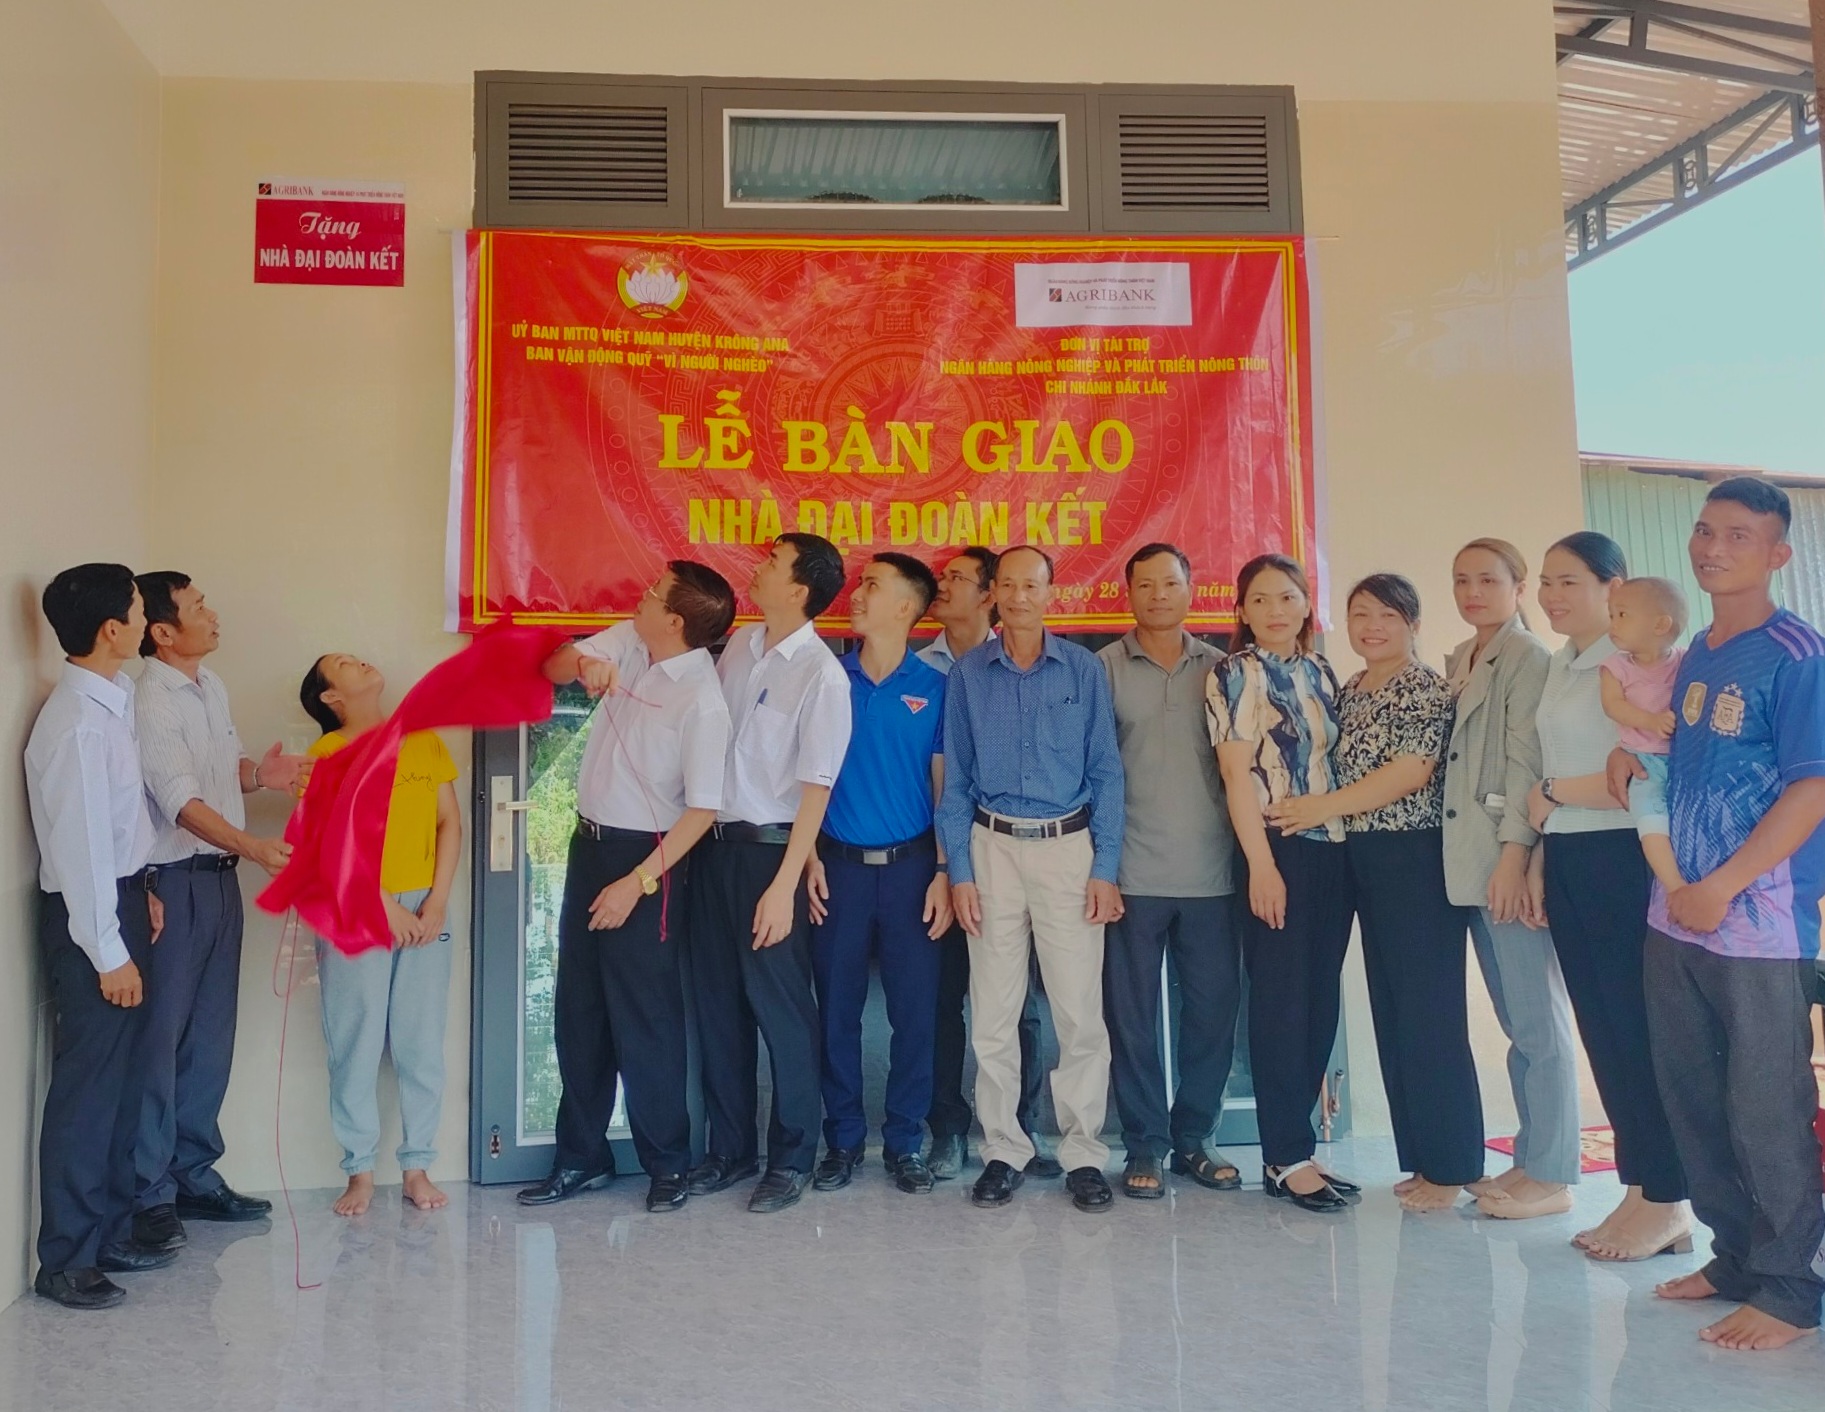 Agribank tỉnh Đắk Lắk bàn giao nhà Đại đoàn kết cho hộ nghèo